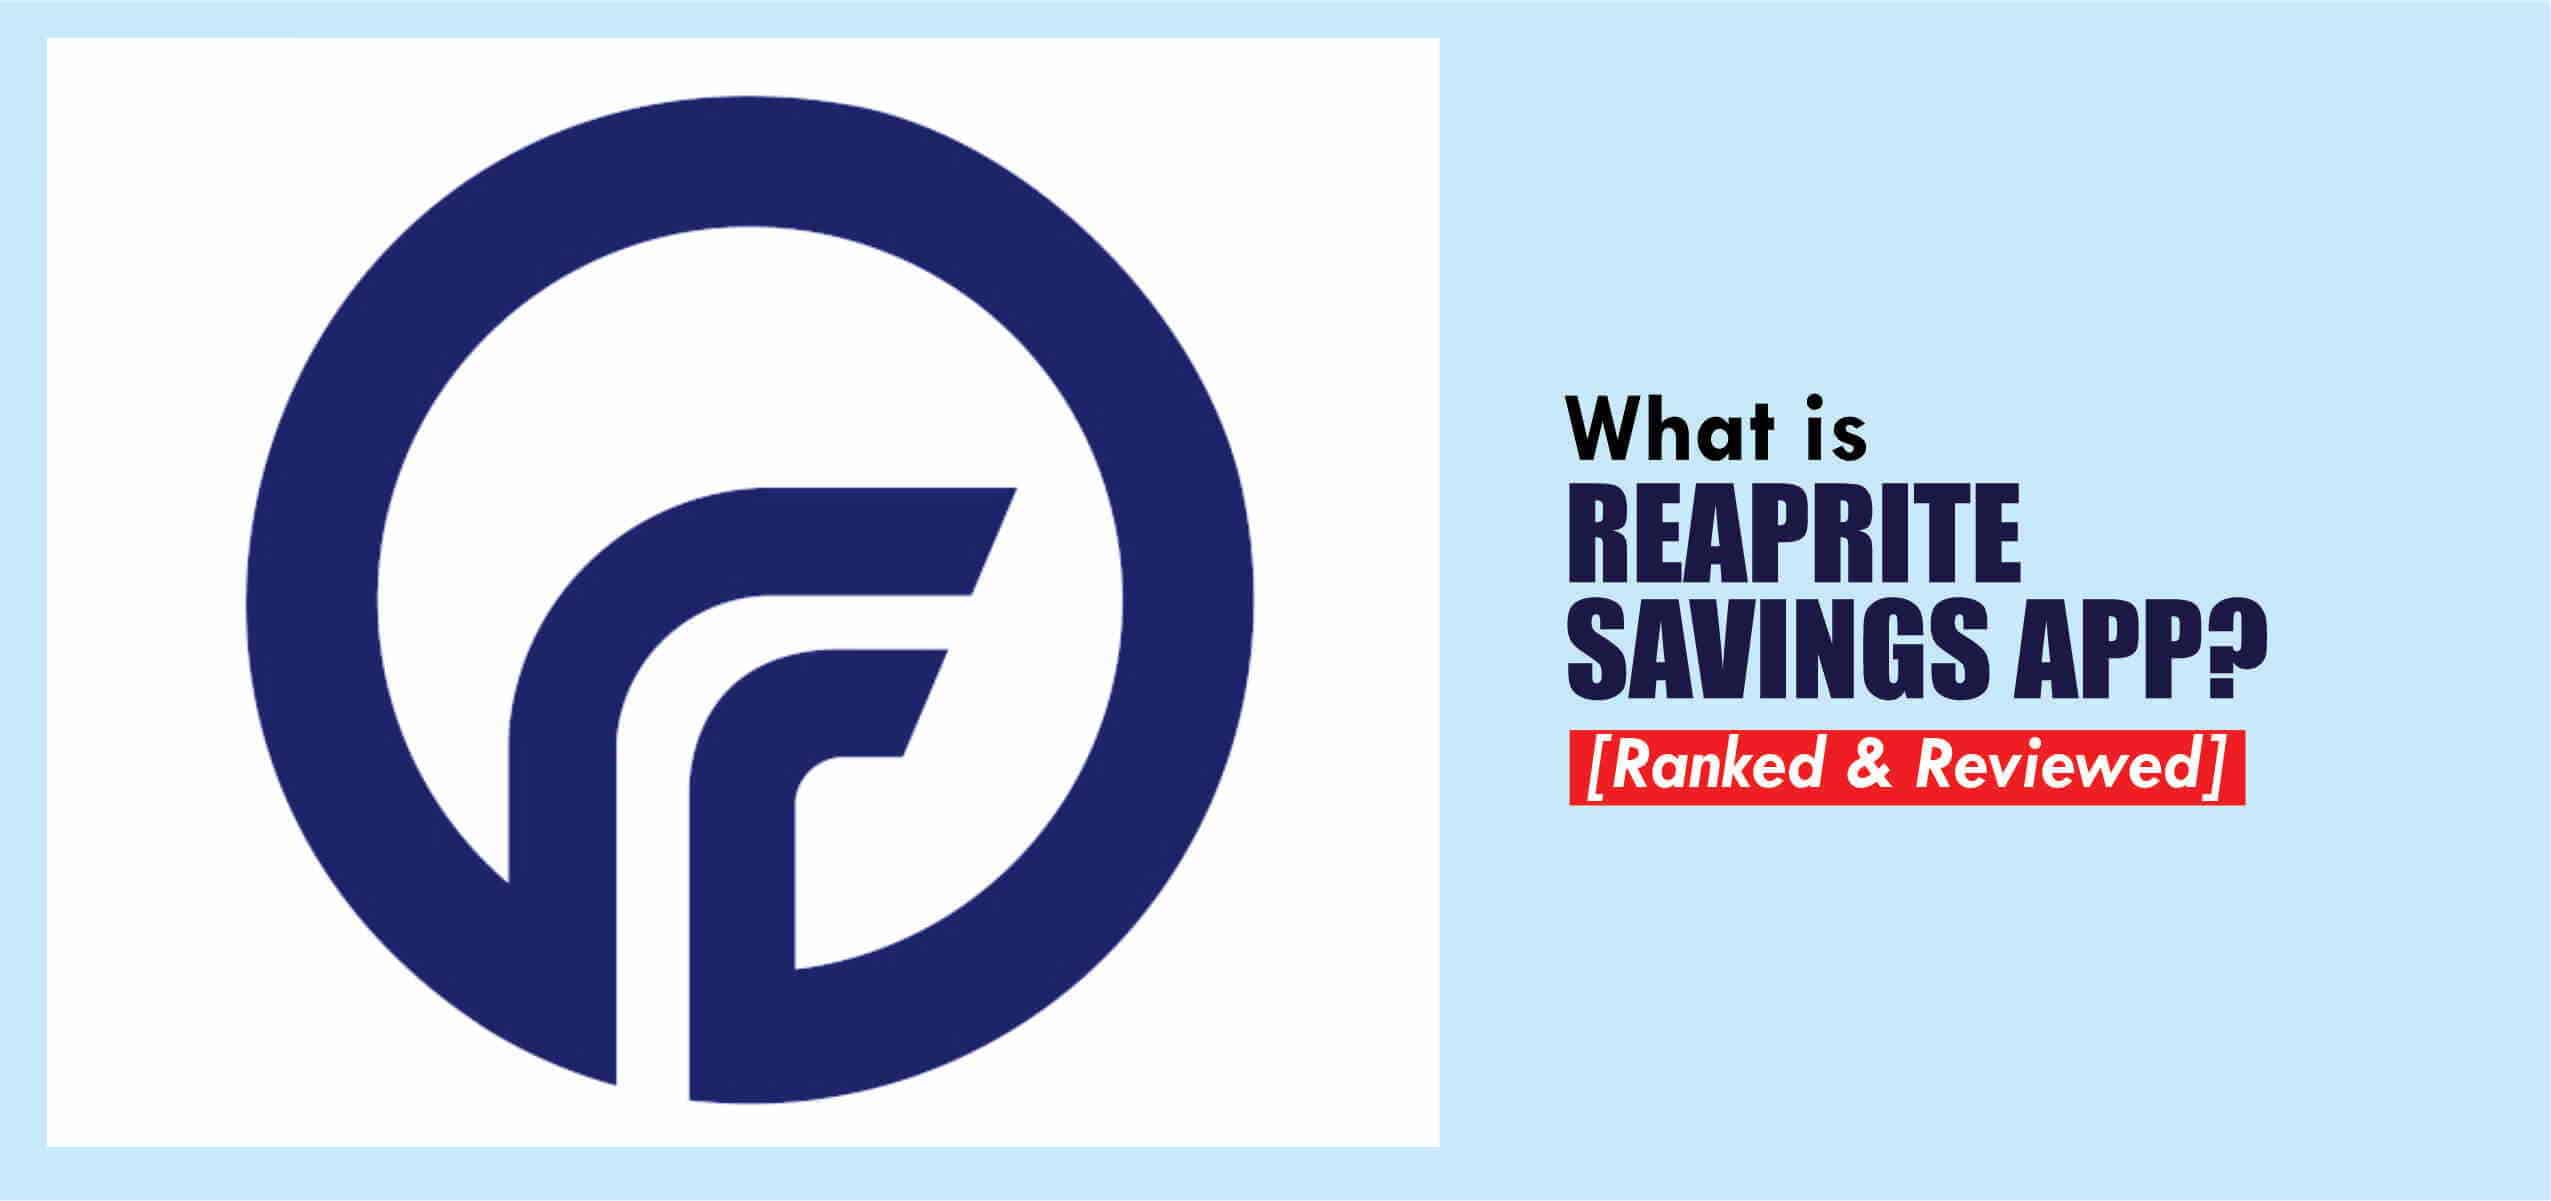 What is Reaprite savings app